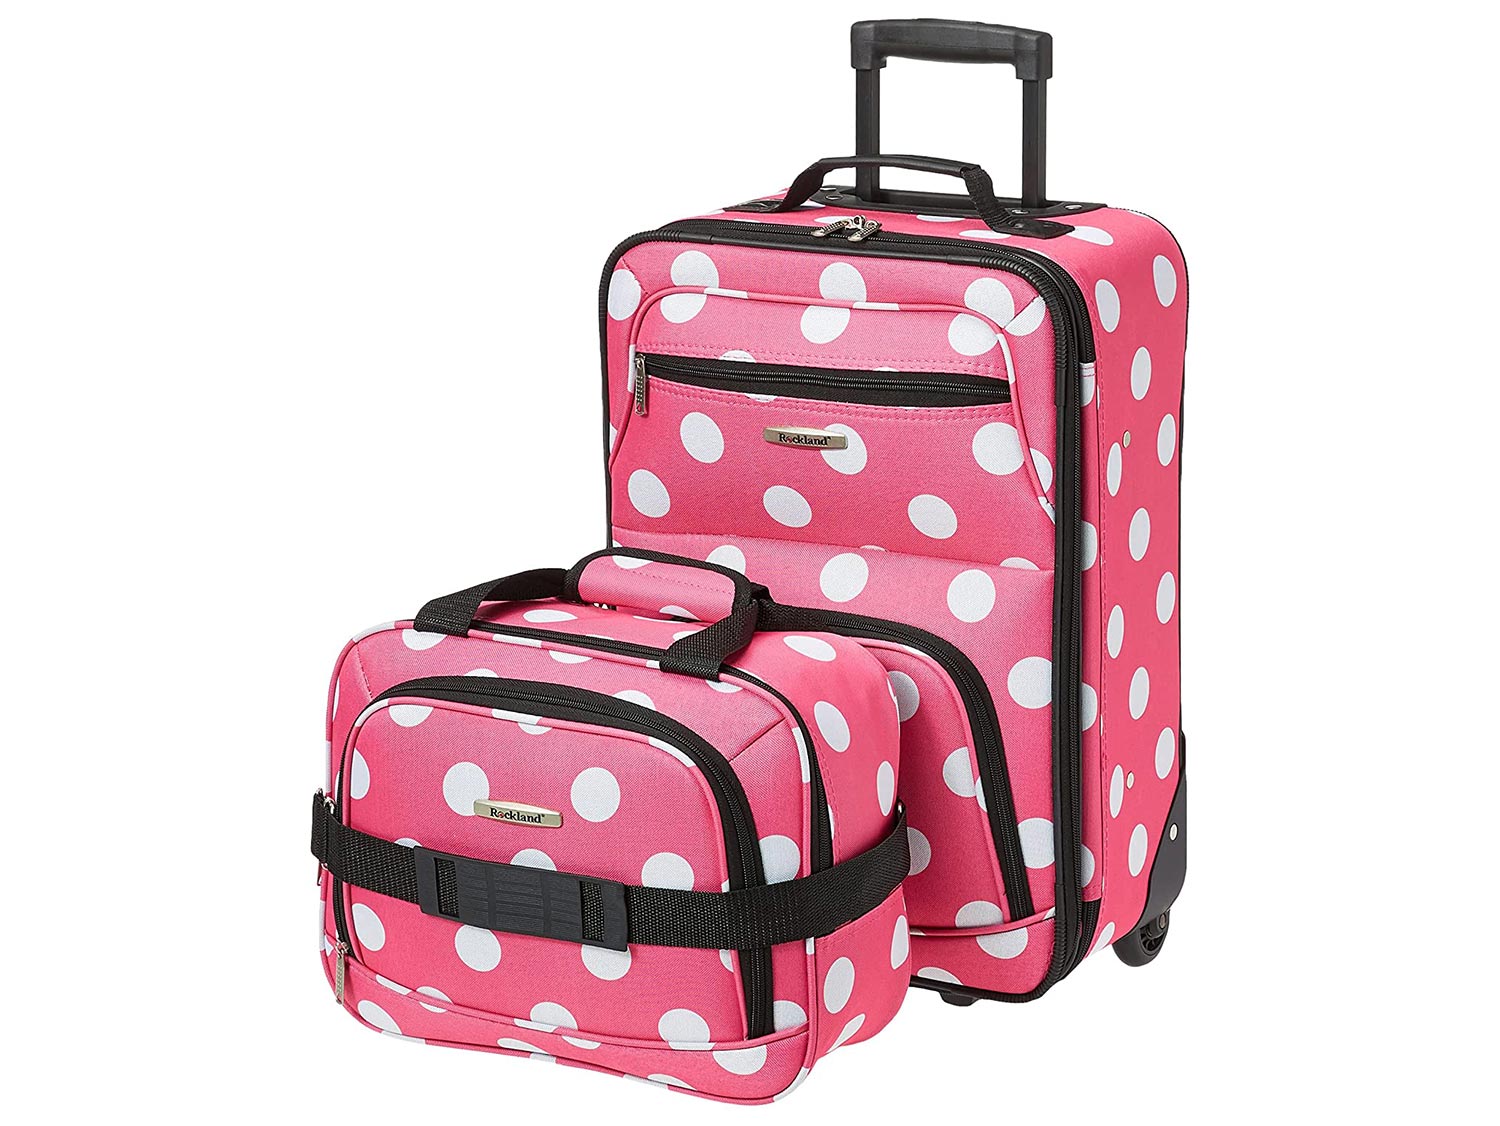 Rockland Fashion Softside Upright Luggage Set